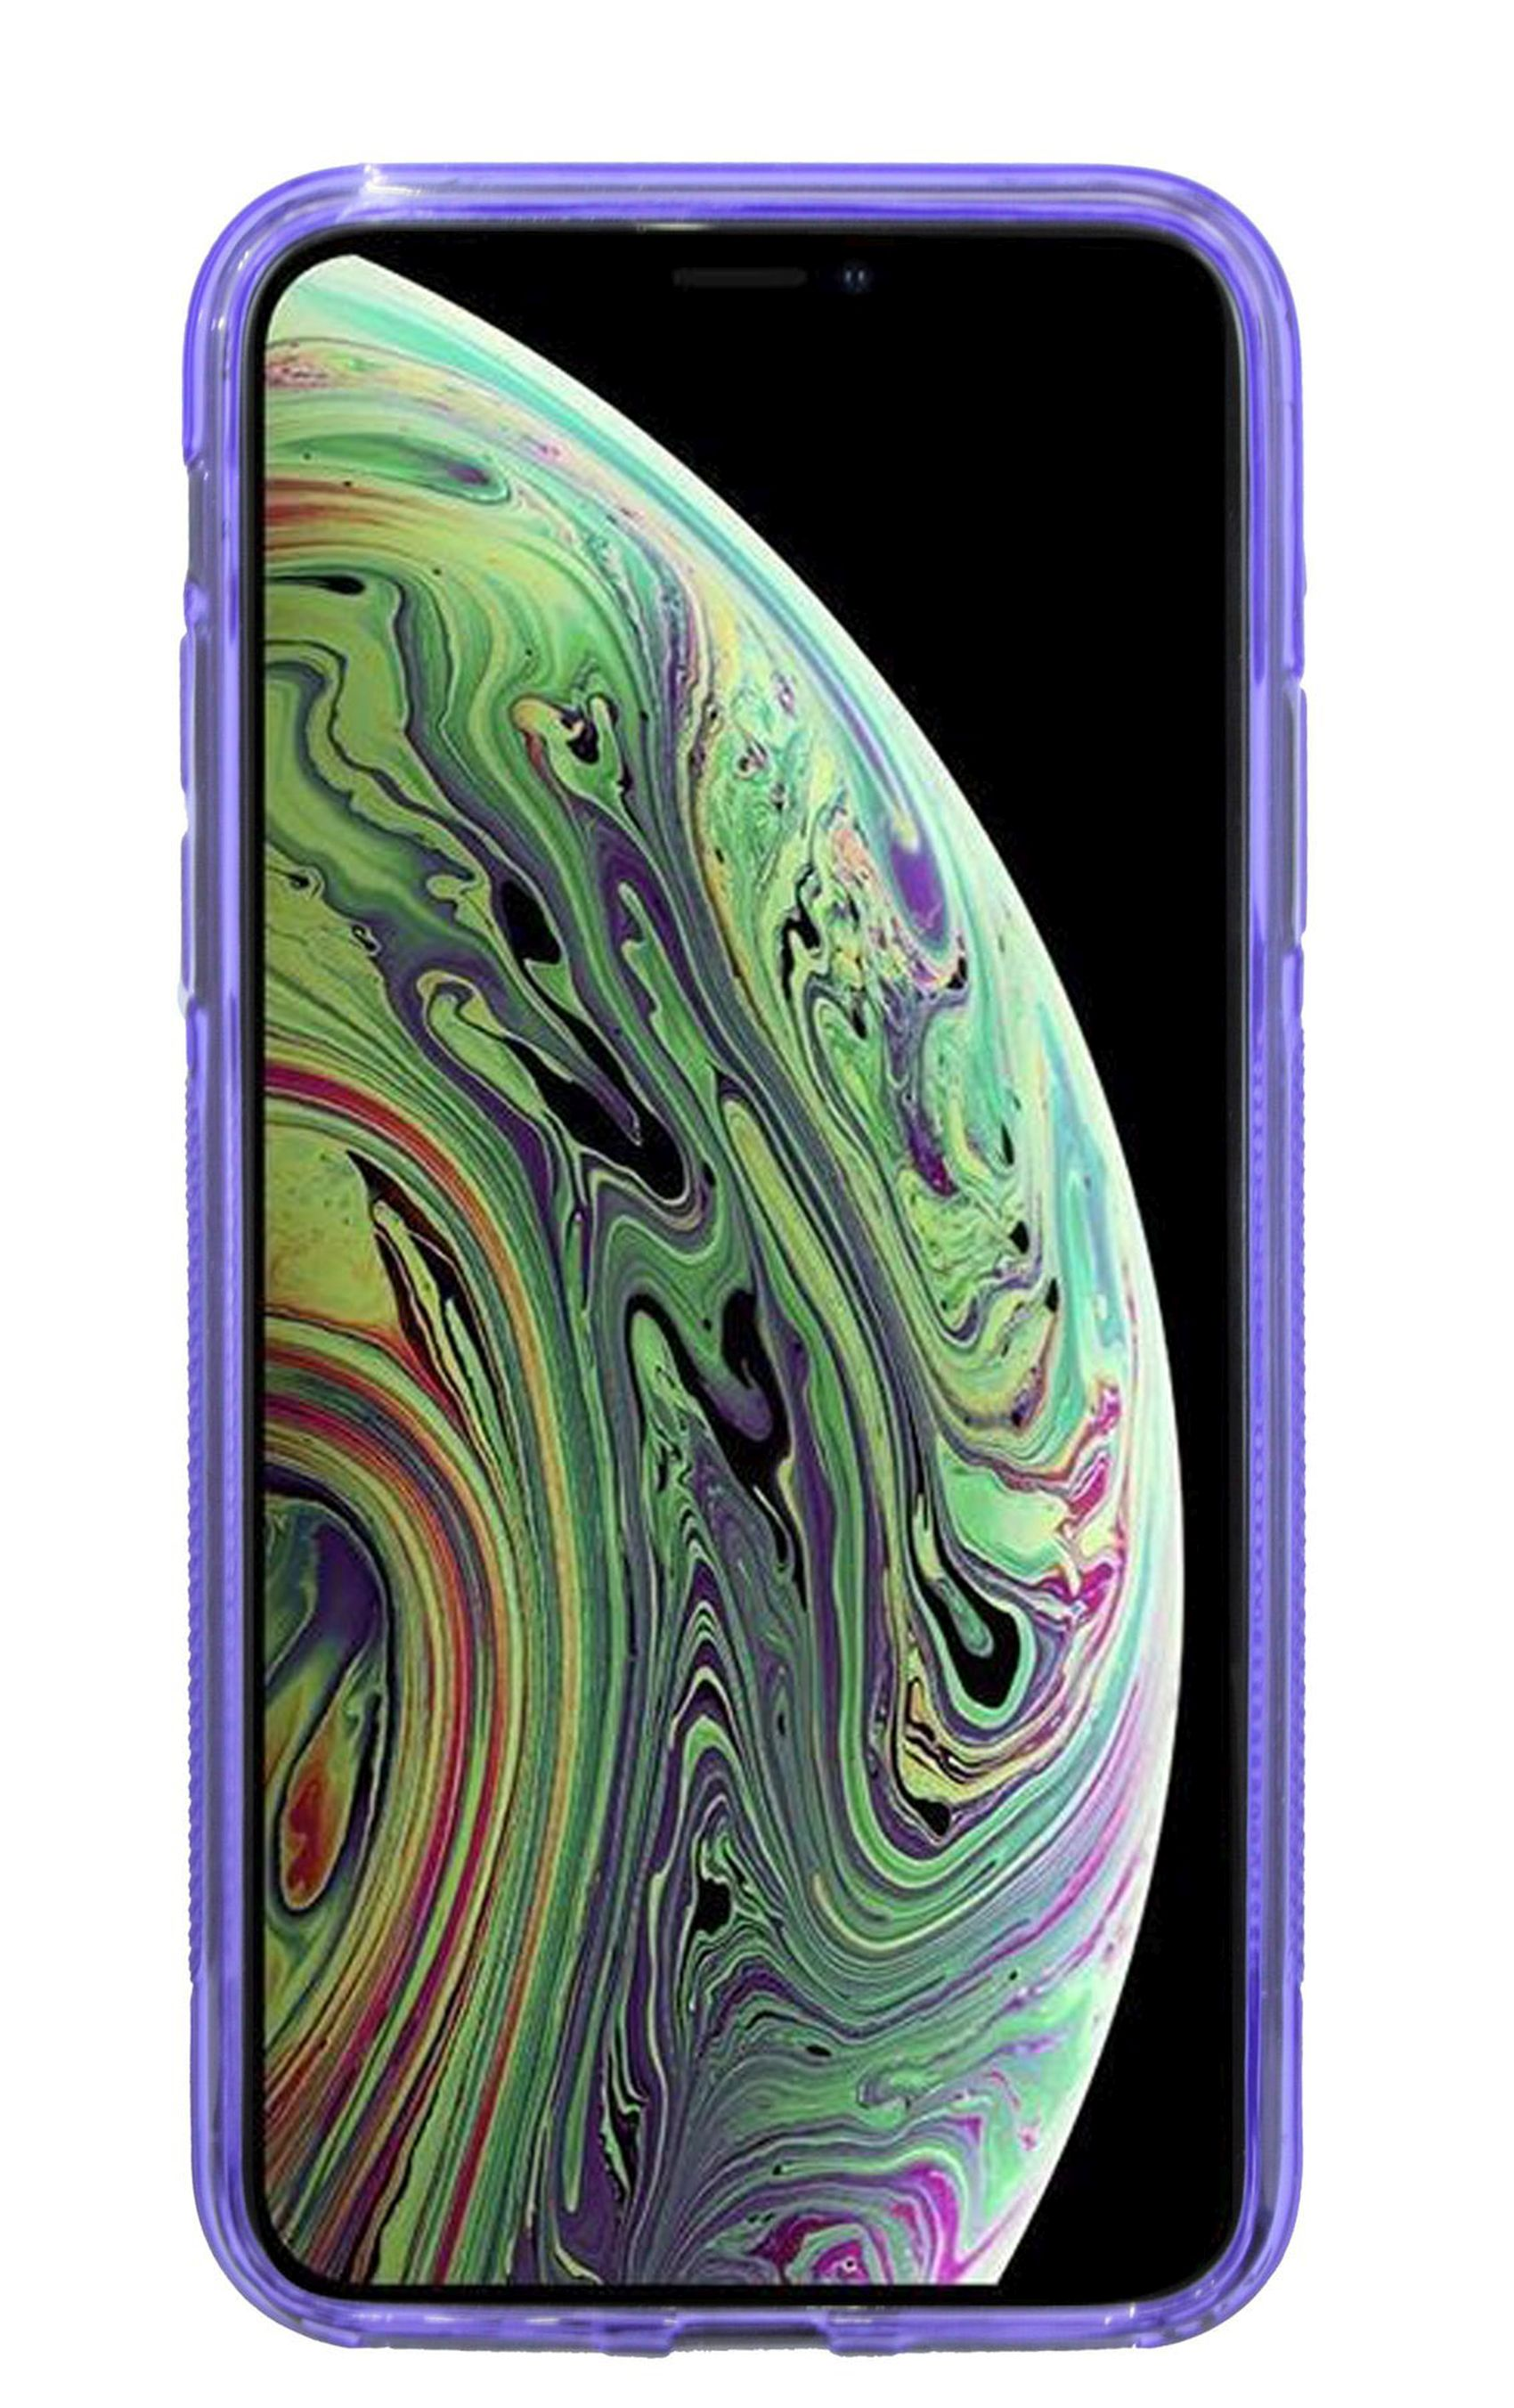 XS S-Line Bumper, Max, Apple, COFI Violett Cover, iPhone